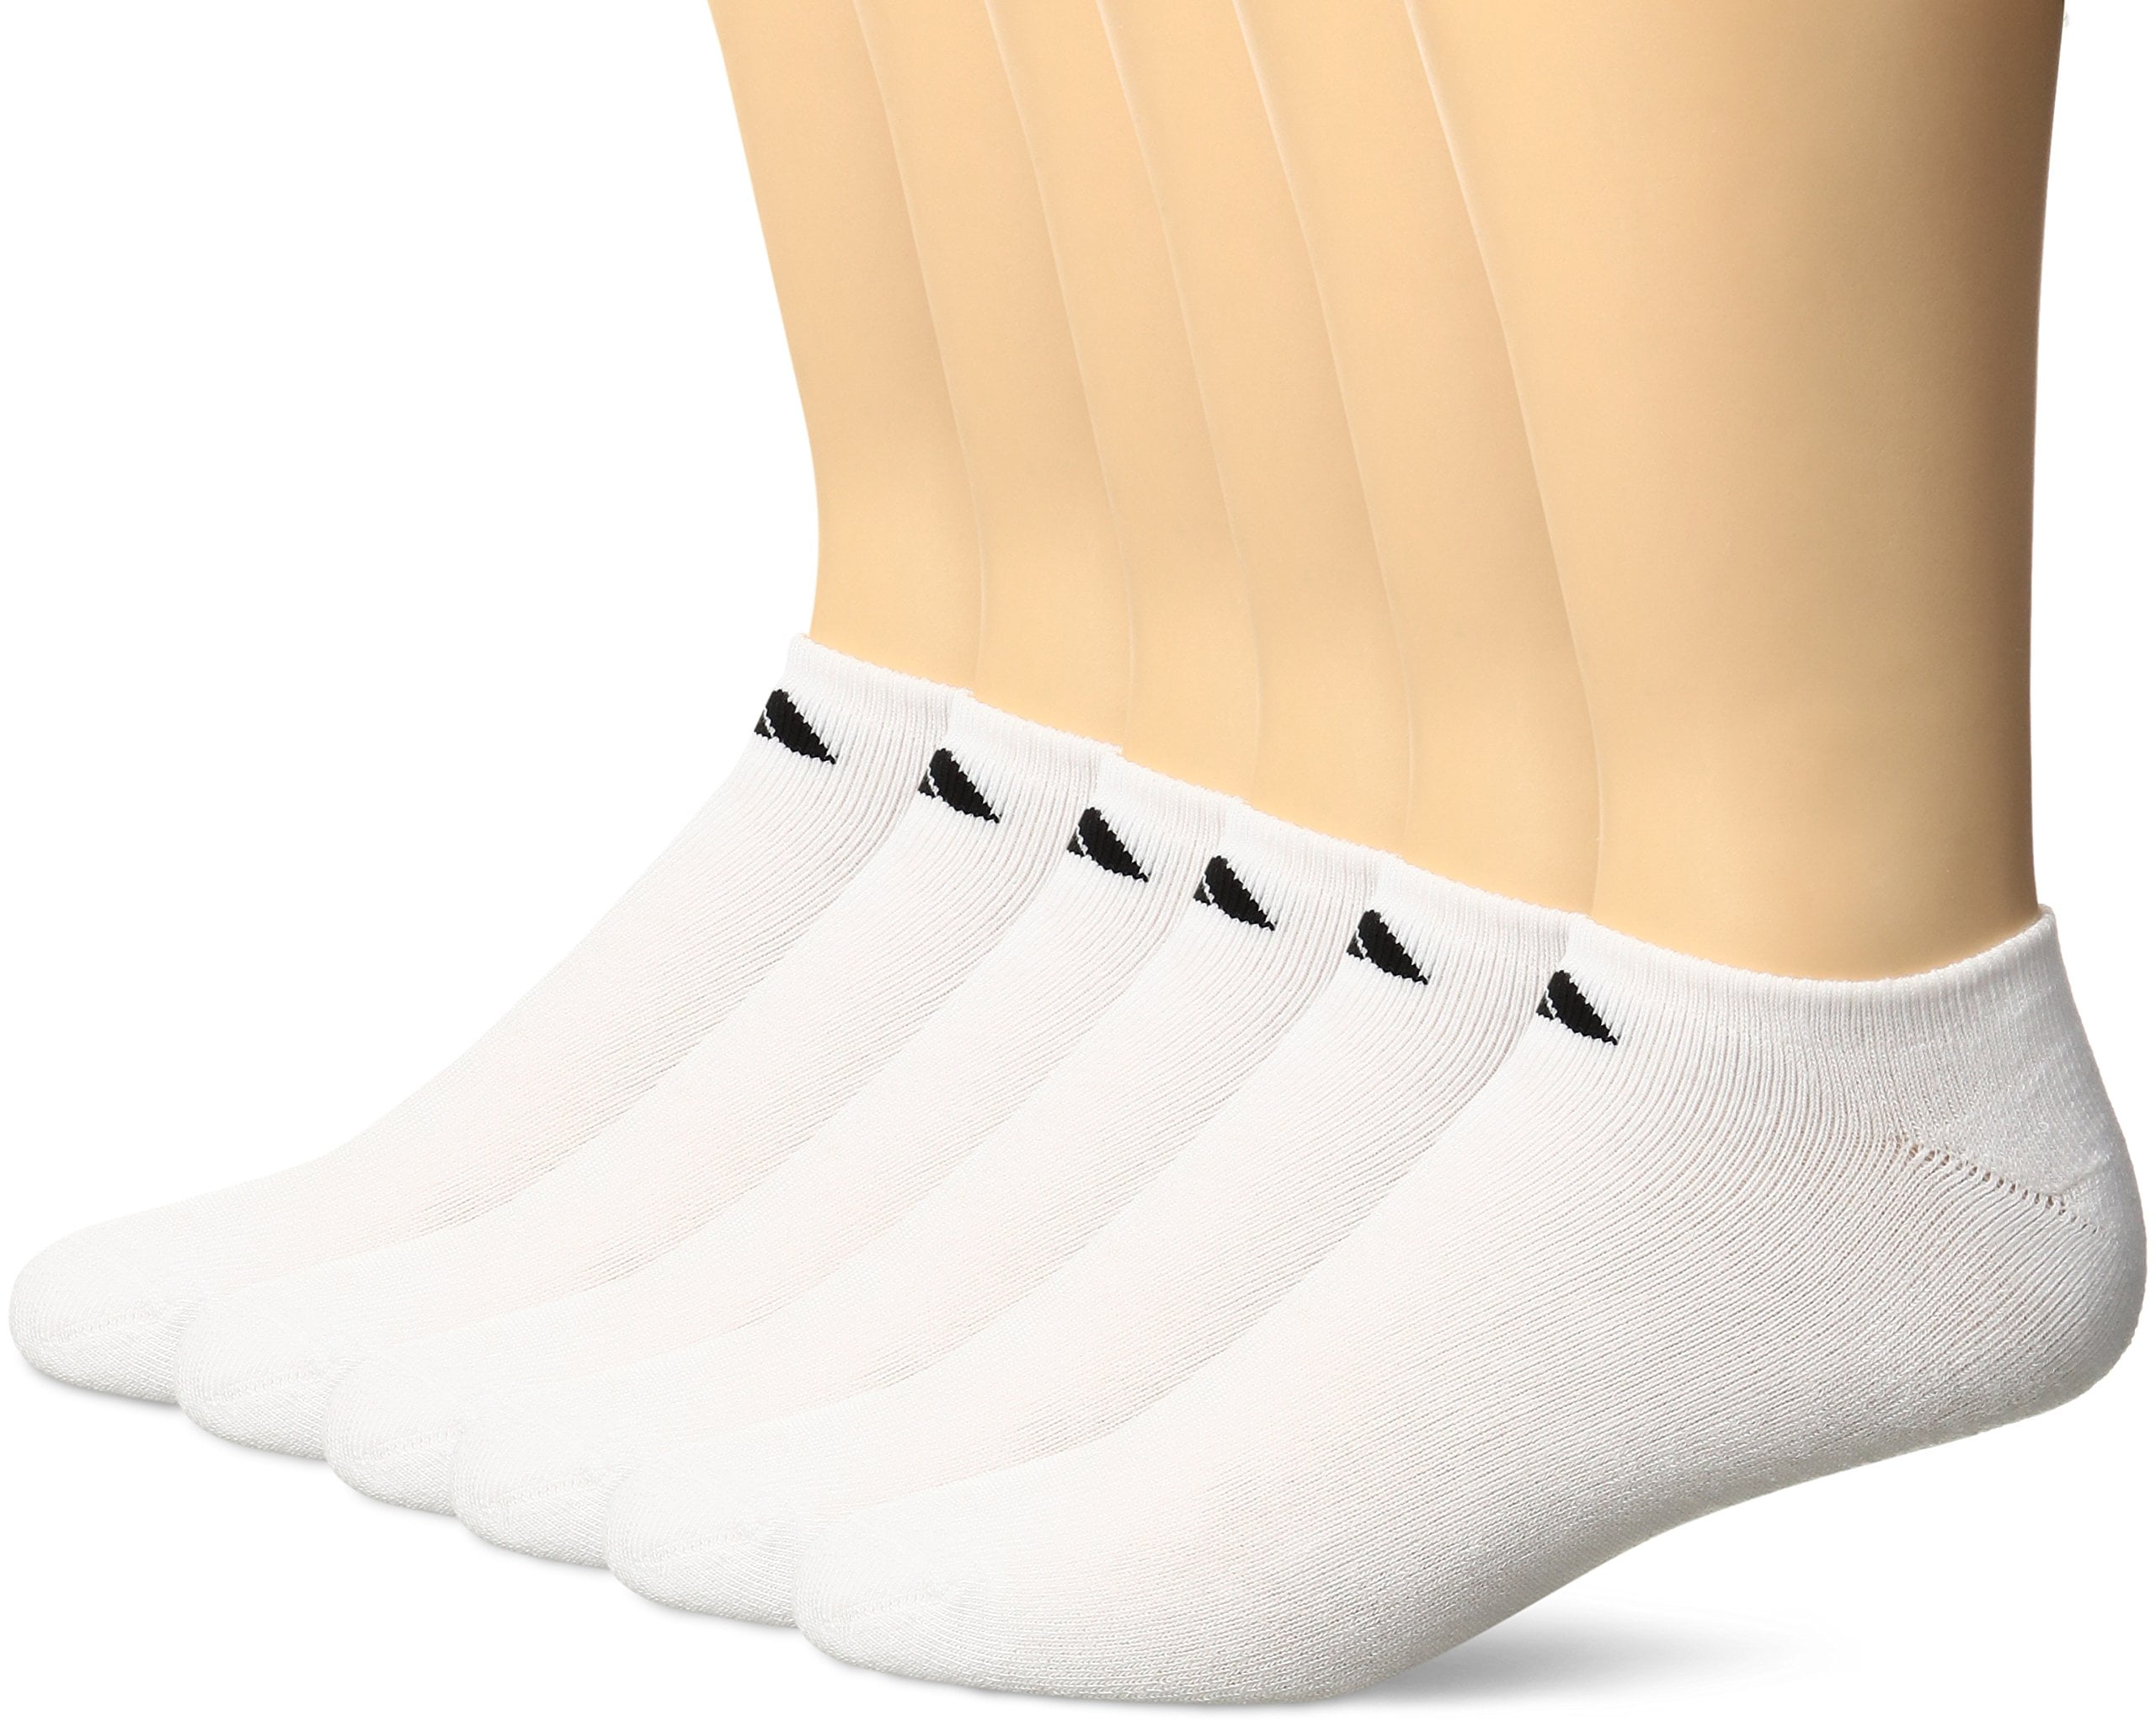 adidas pilates socks